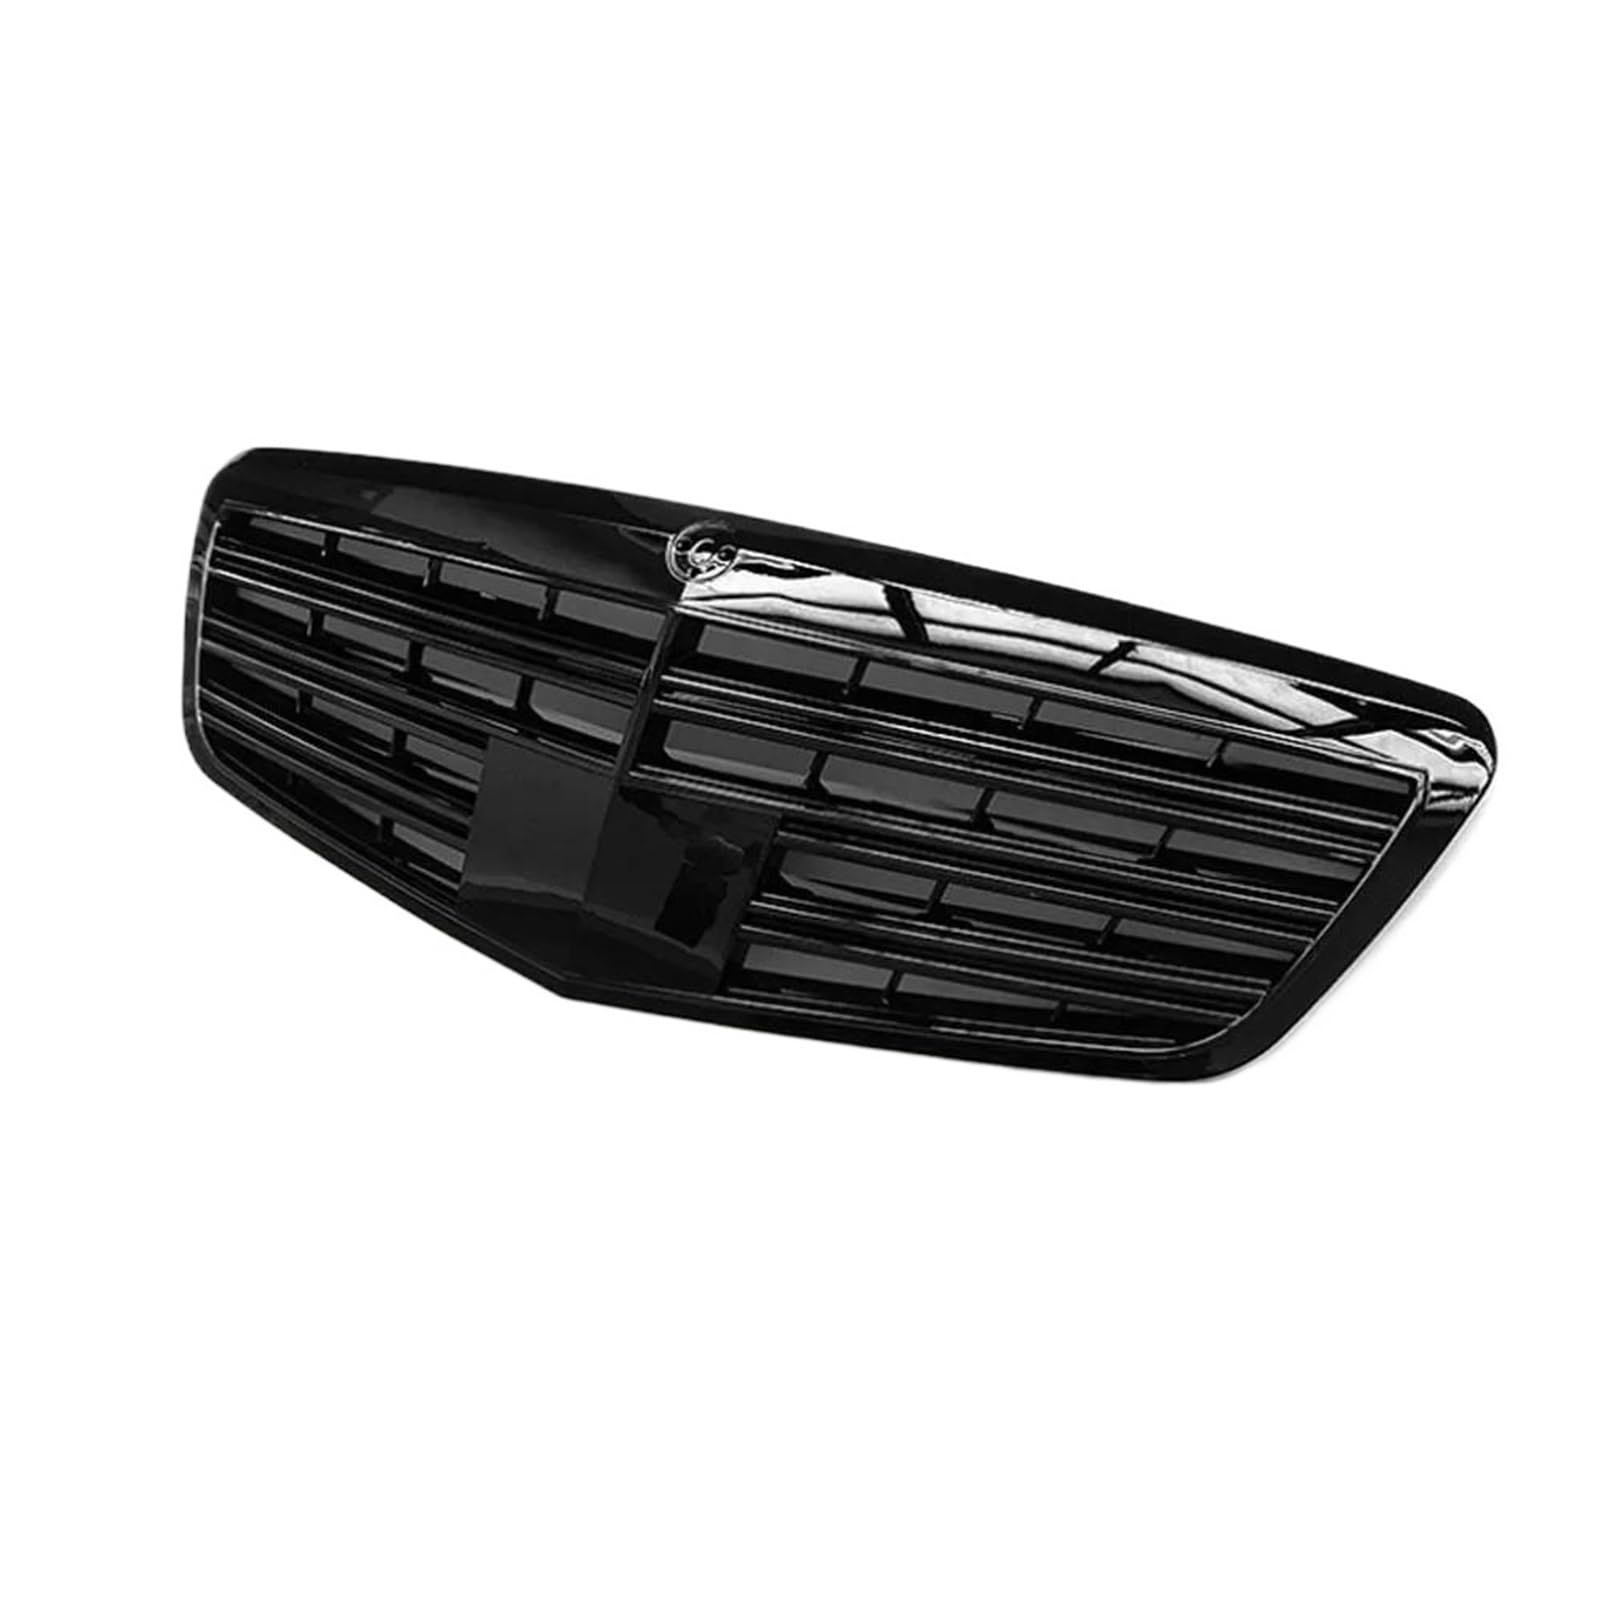 Kühlergrill Front Grill Für merc&edes S Klasse W221 S300 S350 S400 S500 S600 2009-2012 Front Grills Auto Grille Auto Styling (Color : Black) von EVURU